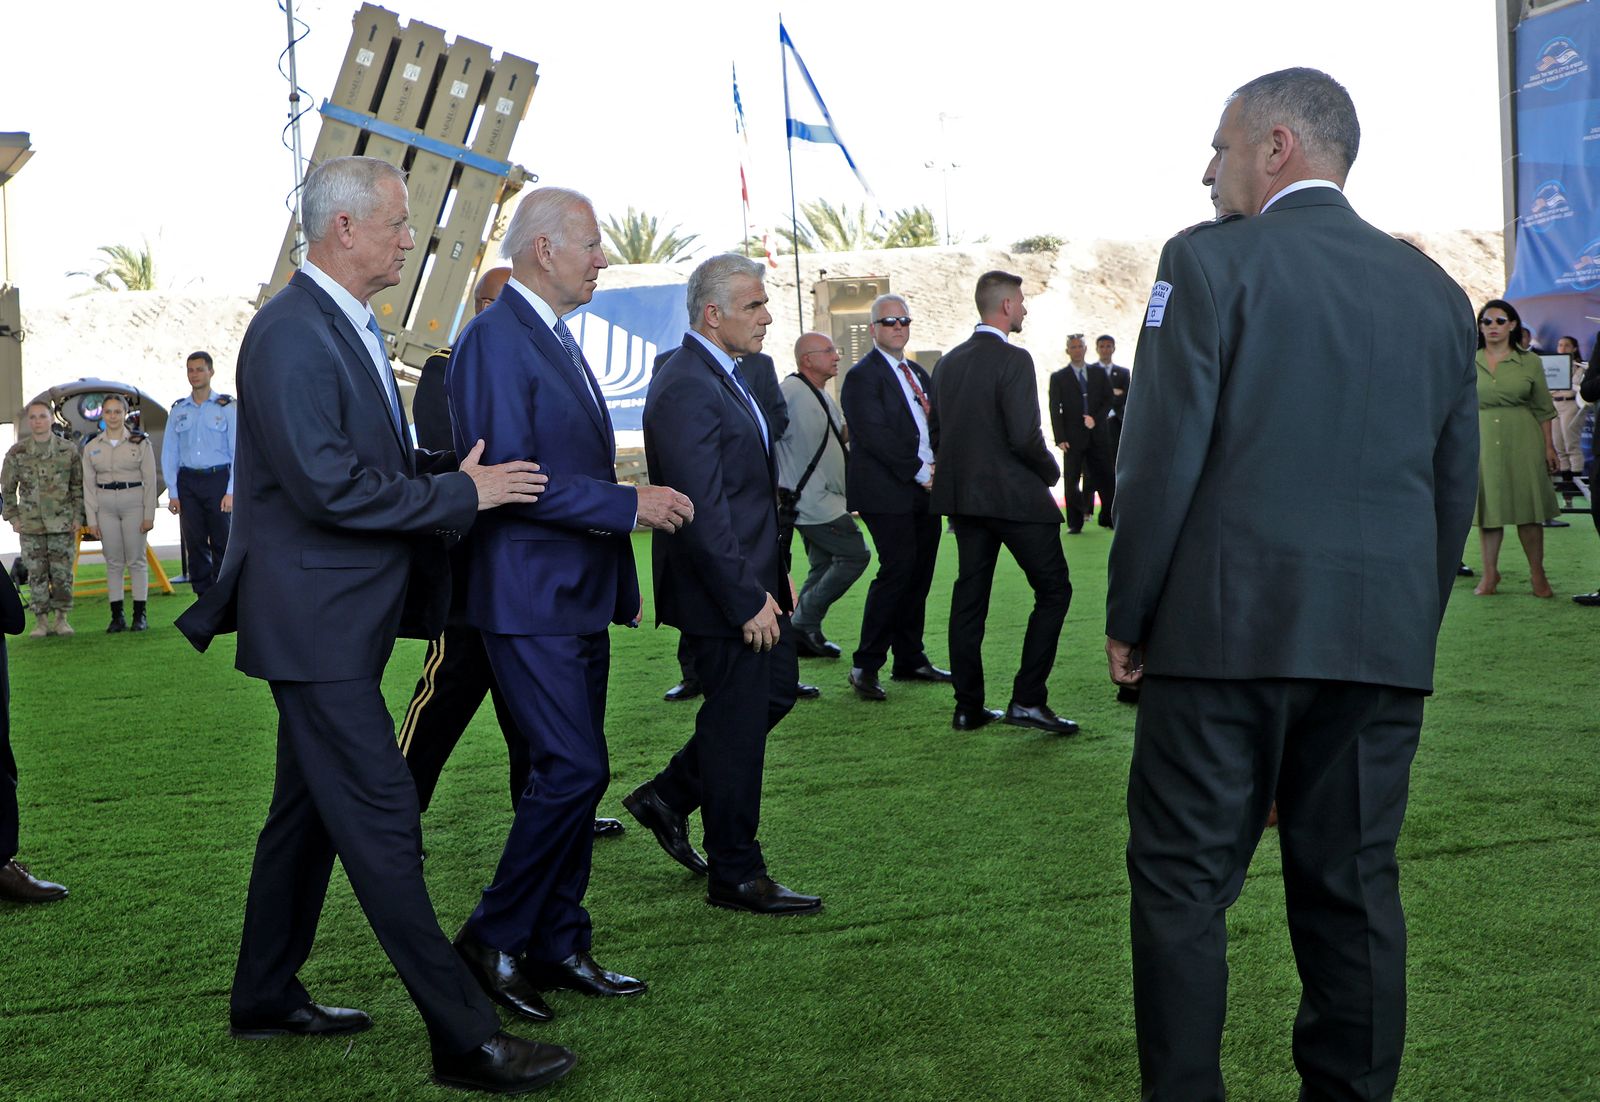 الرئيس الأميركي جو بايدن يتوسط رئيس الوزراء الإسرائيلي يائير لبيد ووزير الدفاع الإسرائيلي بيني جانتس خلال تفقدهم منظومة 